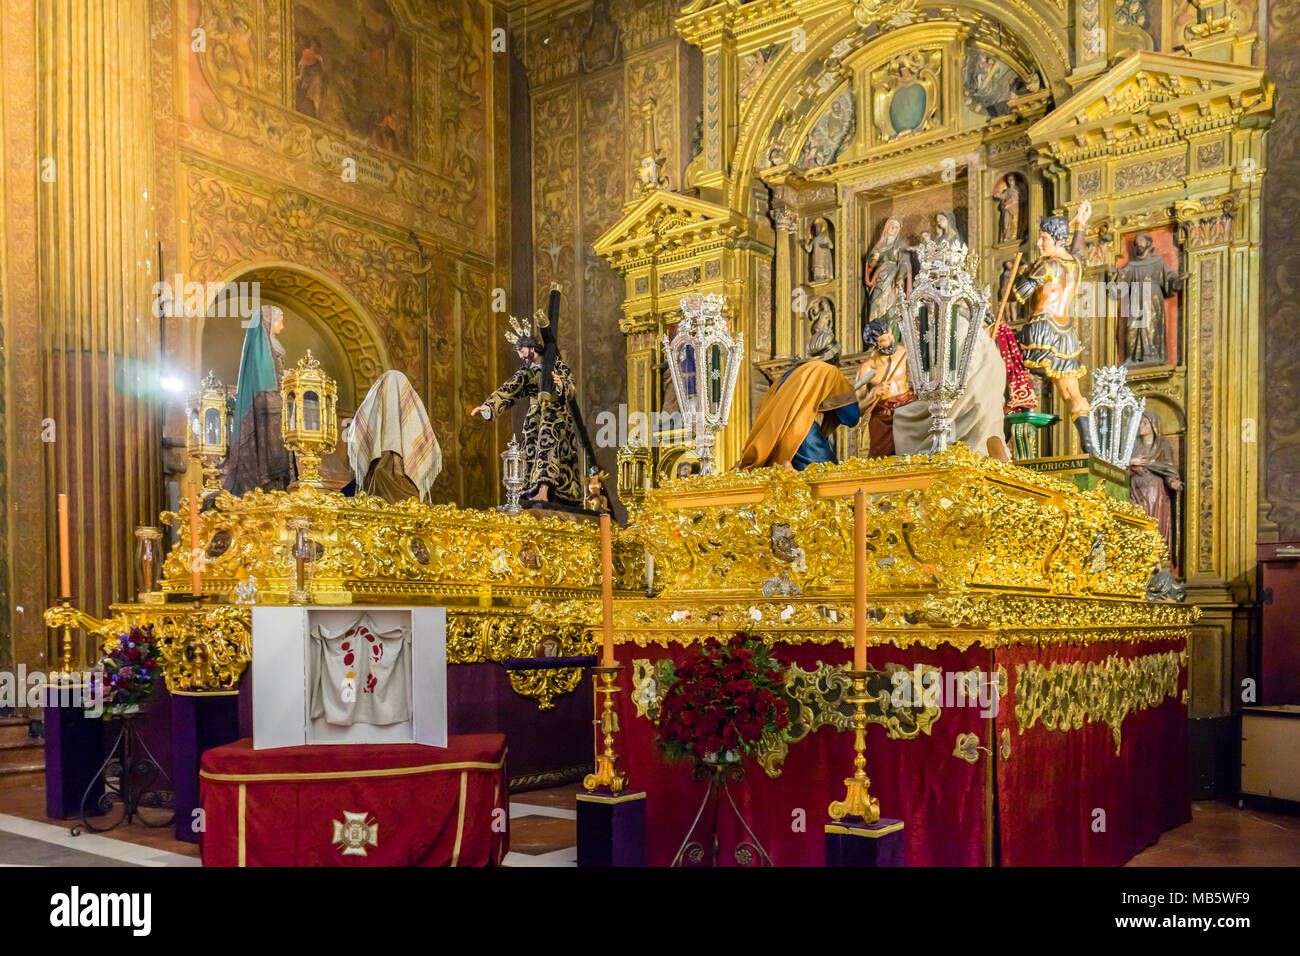 Das Innere der Kirche der Verkündigung (Iglesia de la Anunciacion) kurz vor der Karwoche (Semana santa) in der spanischen Stadt Sevilla, Andalusien, Spanien Stockfoto